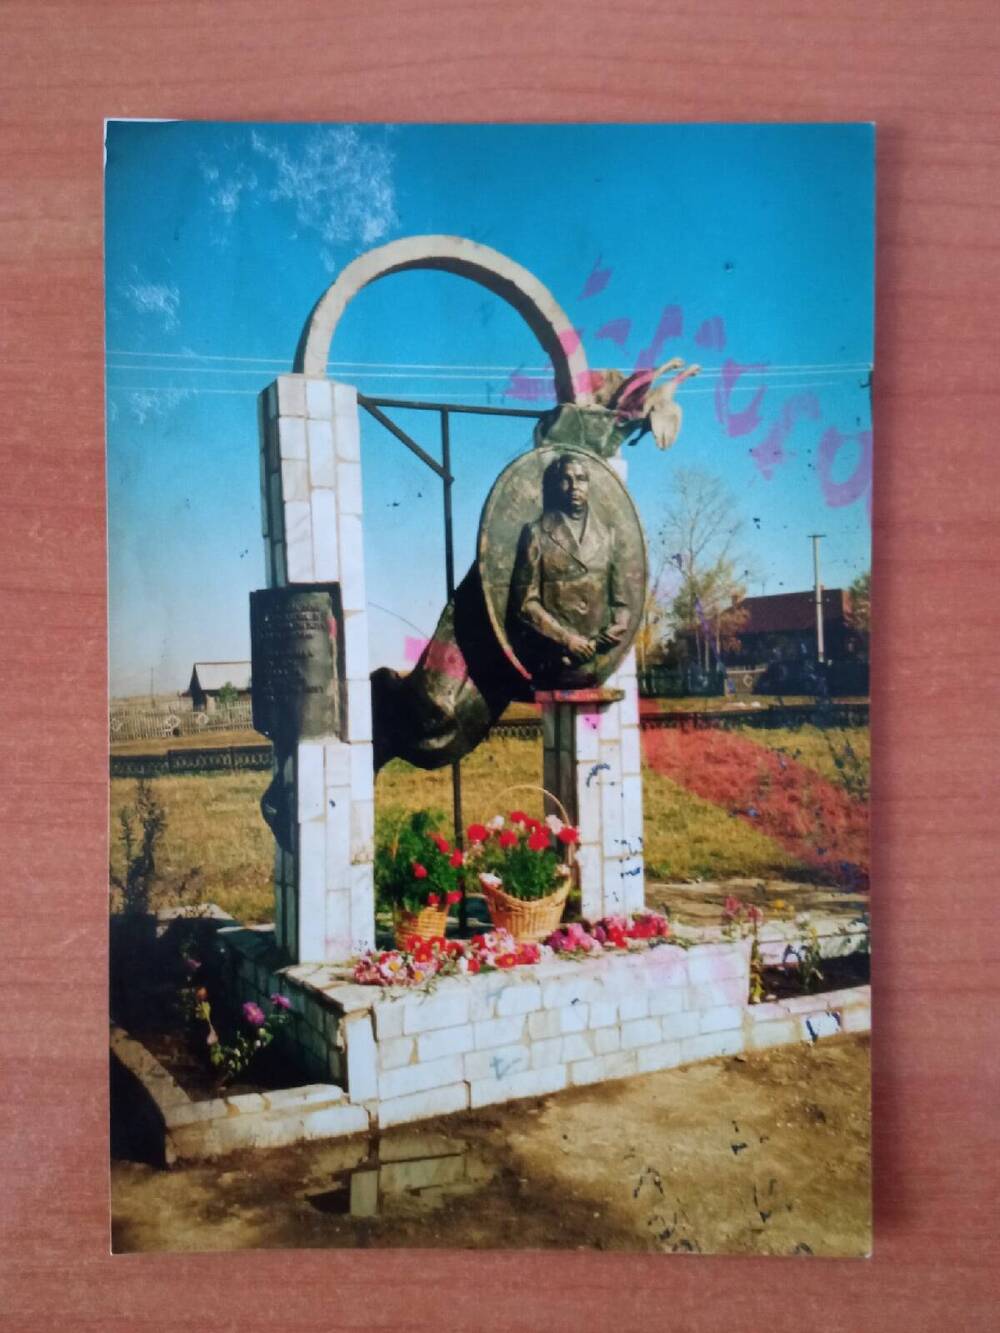 Фотография цветная. На фото изображен памятный знак работы уфимского скульптура Ю.И. Устинова.